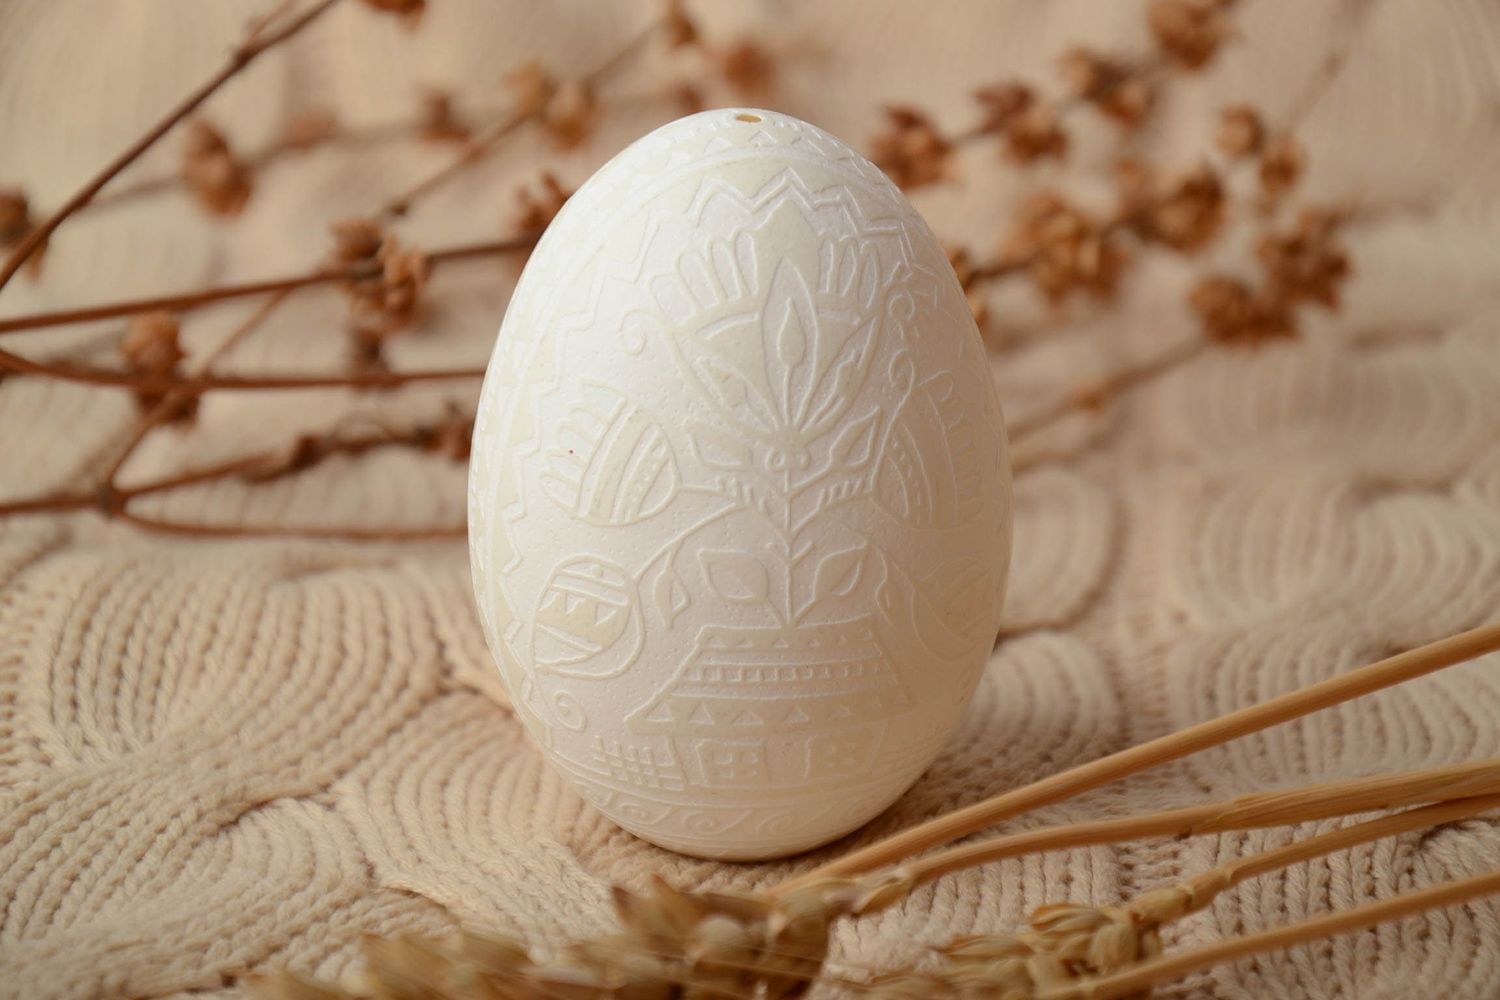 Designer Easter egg etched with vinegar photo 1